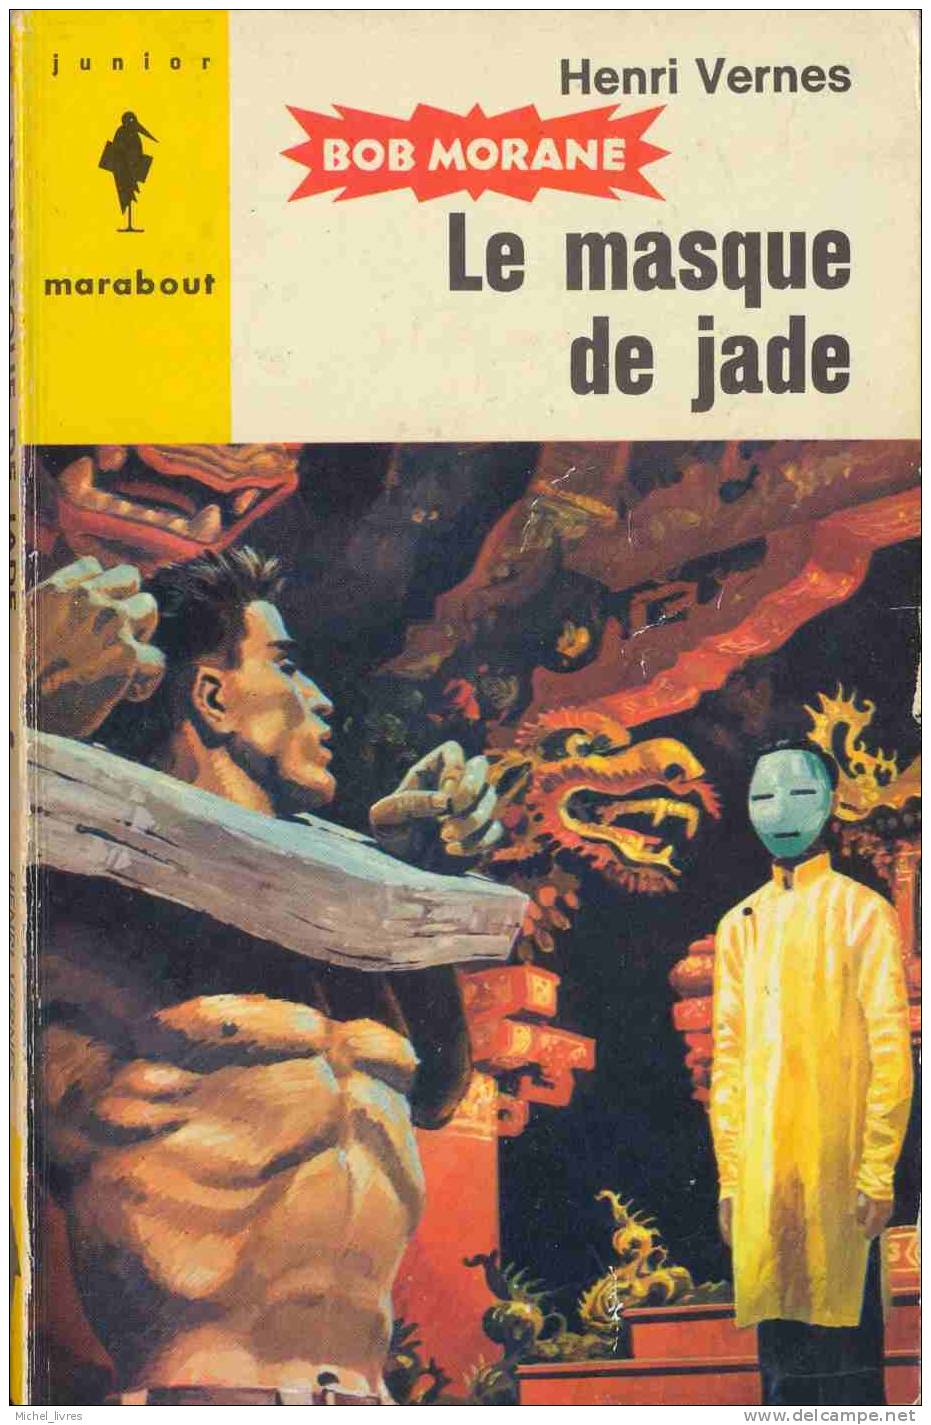 Bob Morane - Henri Vernes - MJ 090 - Le Masque De Jade - Réed 1963 - Type 5 - Index 262 - TBE - Belgian Authors